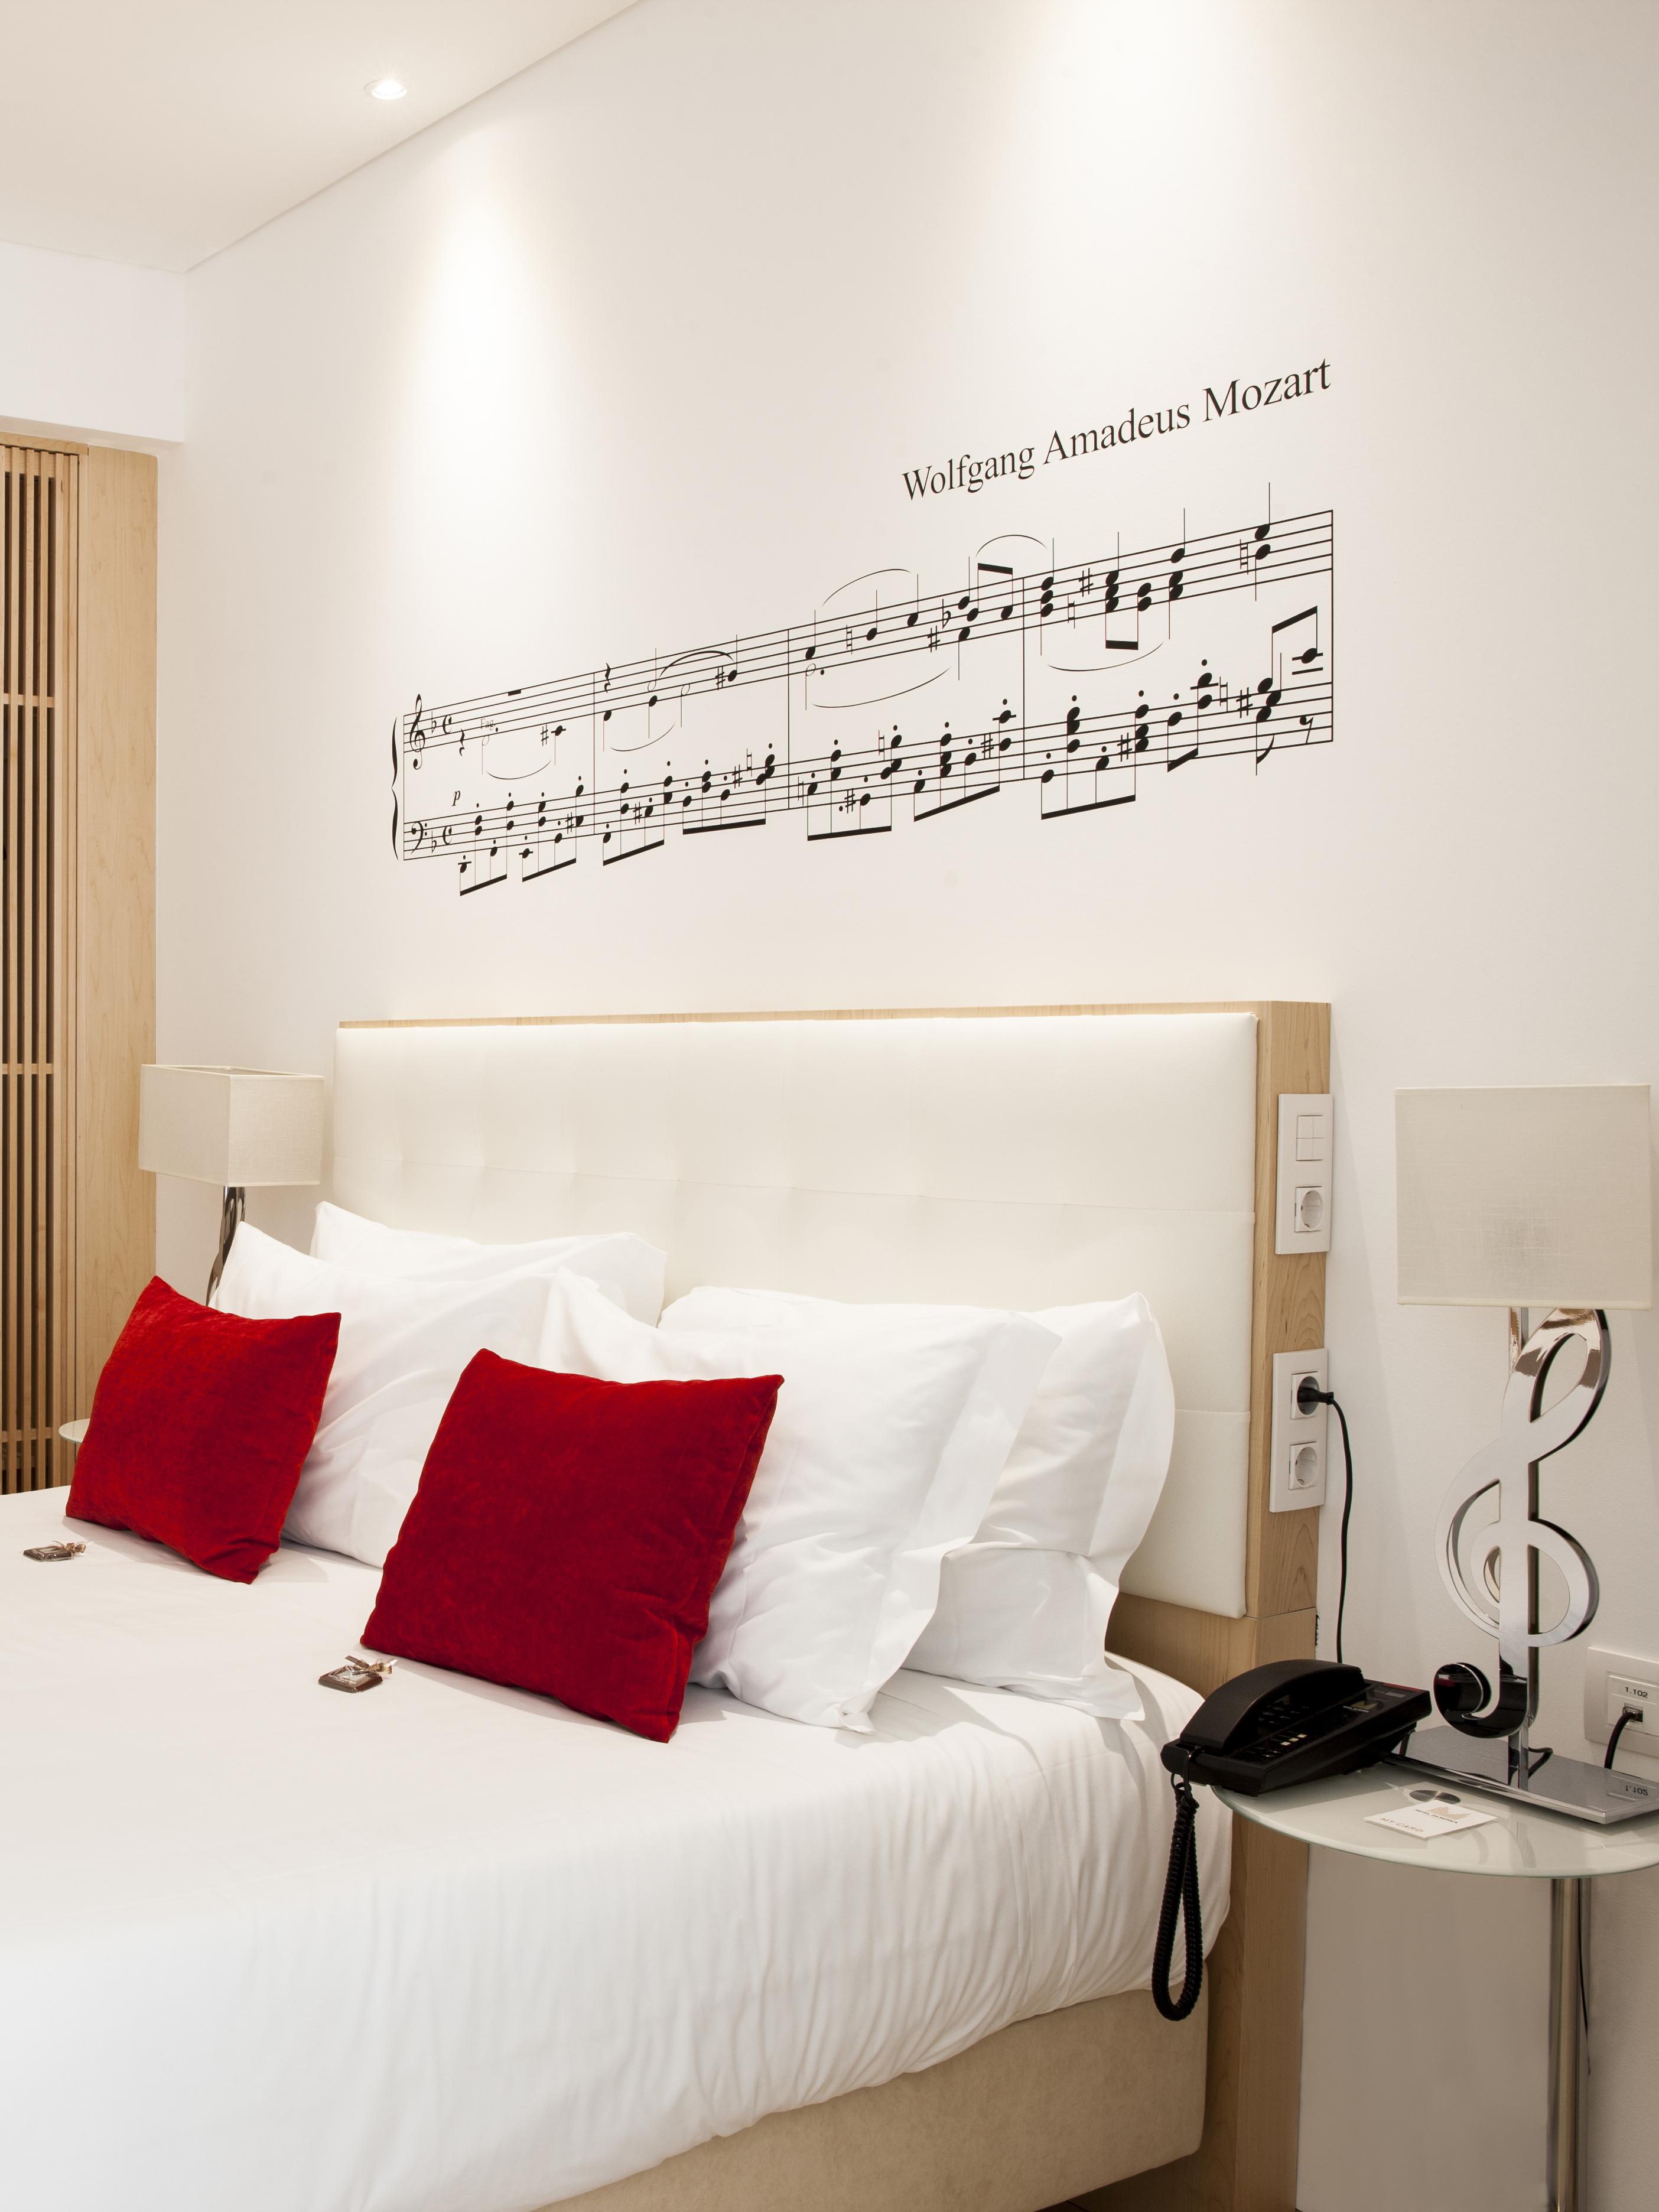 Per l'Hotel da Musica di Porto il tema si intuisce dal suo nome. Dispone di 85 camere, ognuna ispirata da brani musicali di compositori famosi